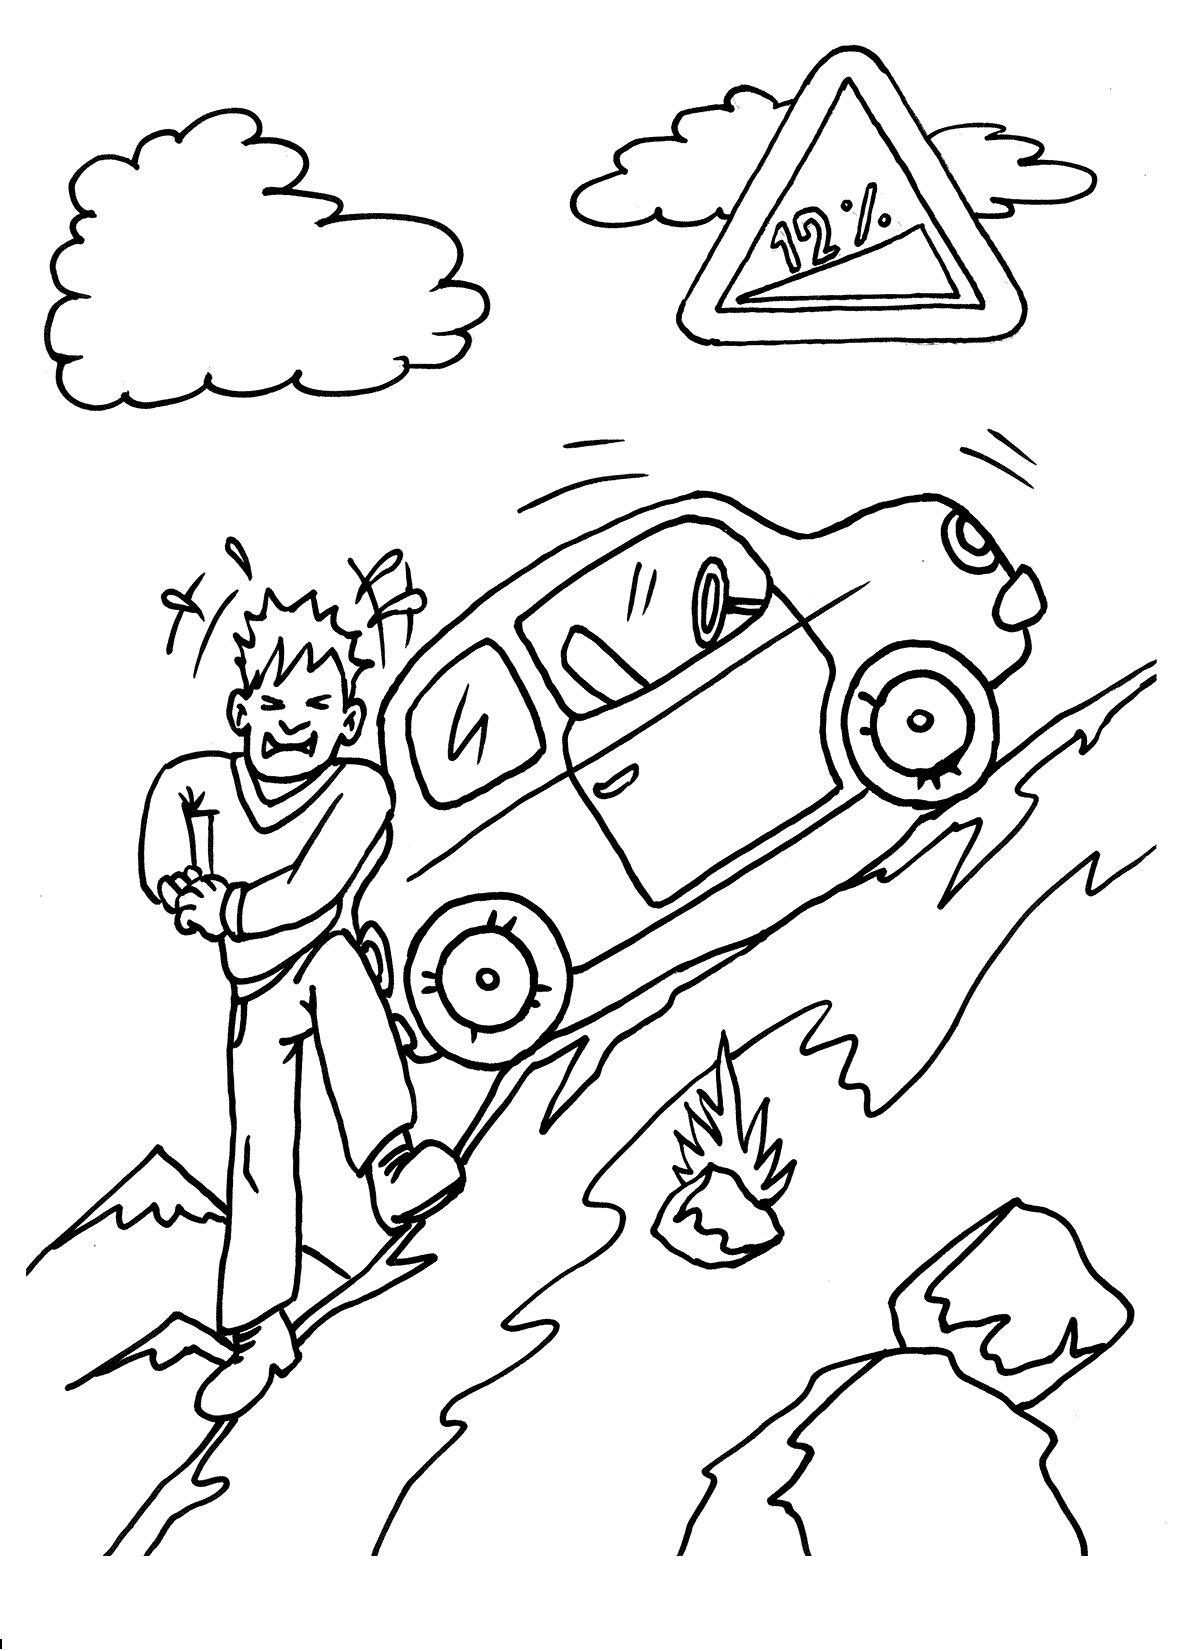  Дорожные знаки, крутой подъем, водитель толкает машину сзади по горе, камни, облака